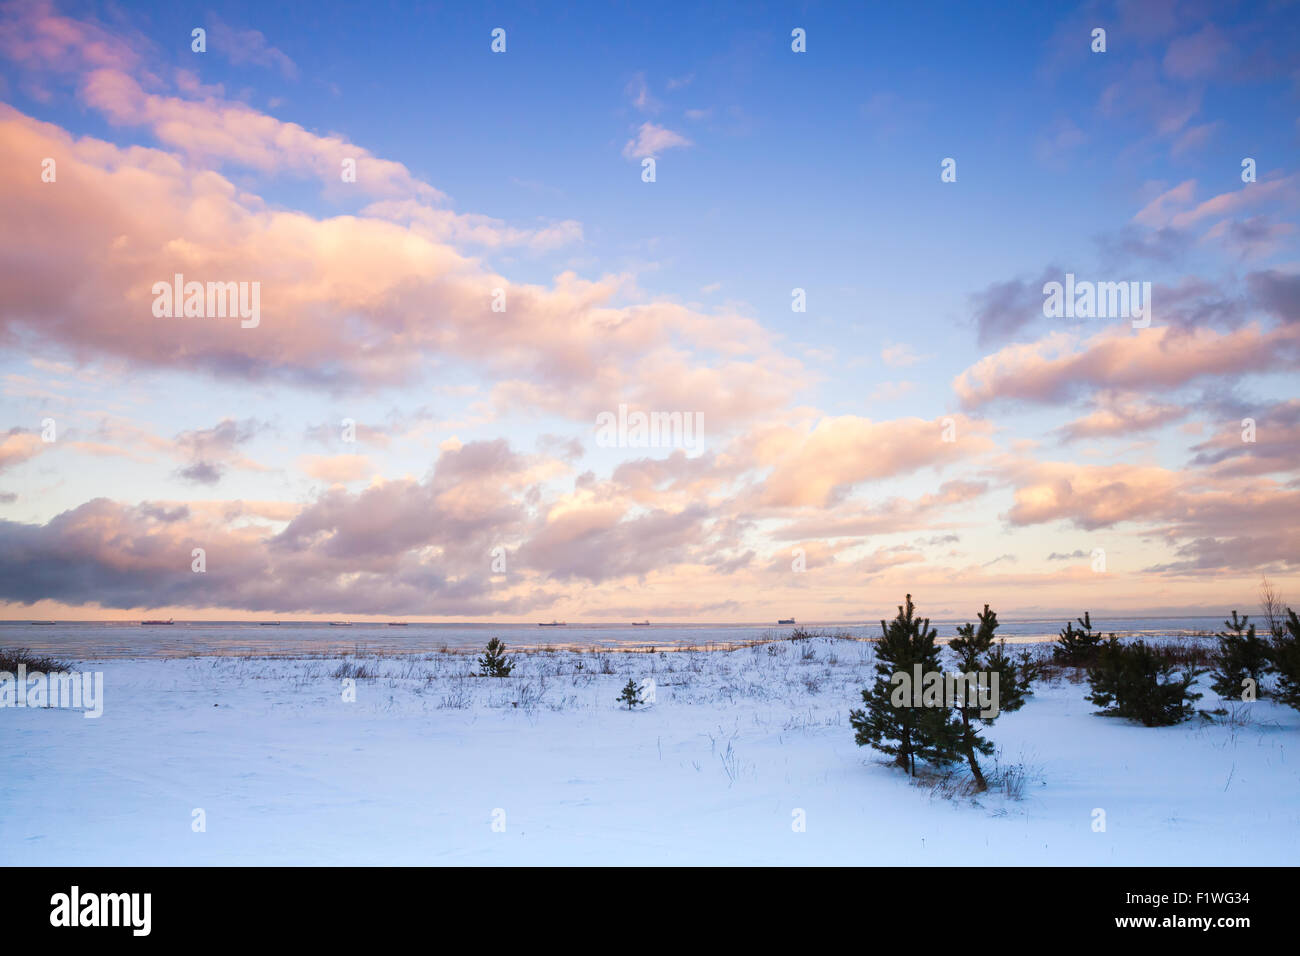 Paysage côtier d'hiver avec de petits pins sur la côte de la mer Baltique sous ciel nuageux colorés. Golfe de Finlande, Russie Banque D'Images